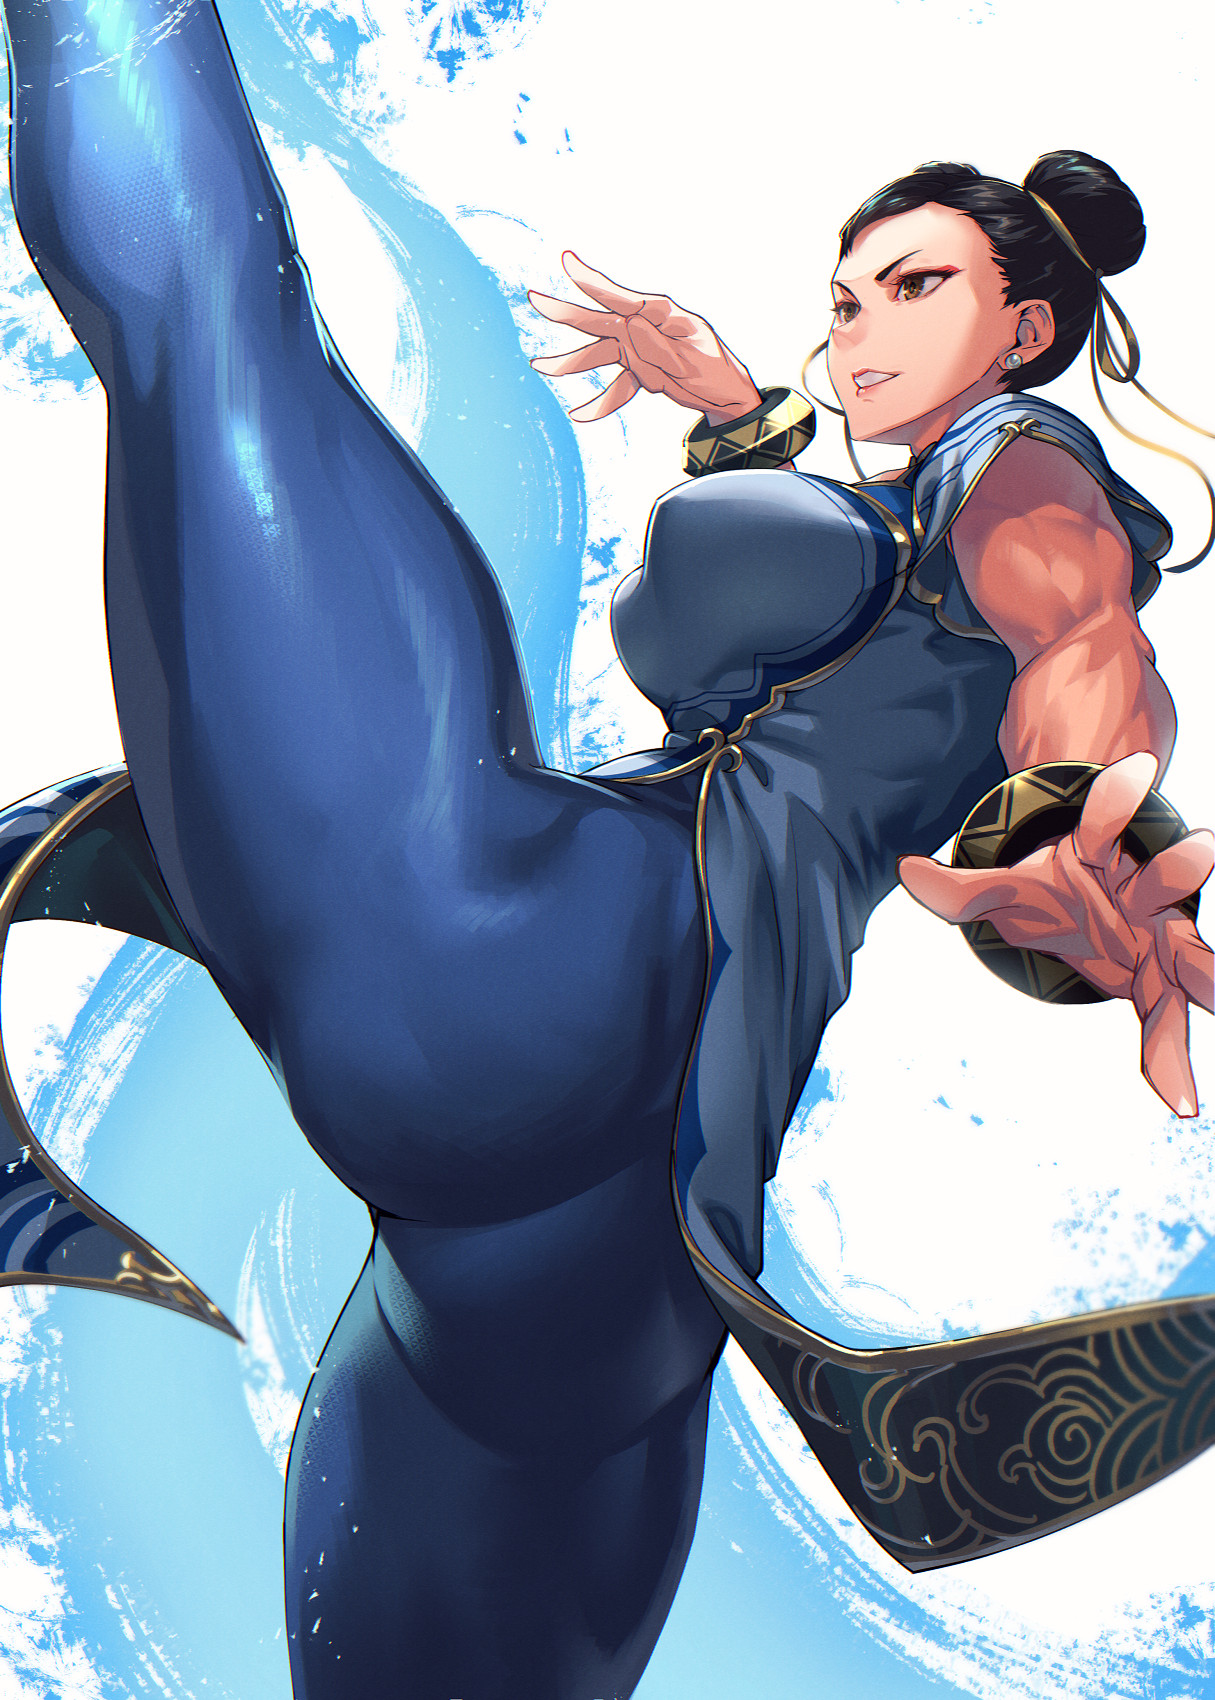 Anime Anime Girls Street Fighter Street Fighter Vi Chun Li Hairbun Brunette Solo Artwork Digital Art 1215x1700